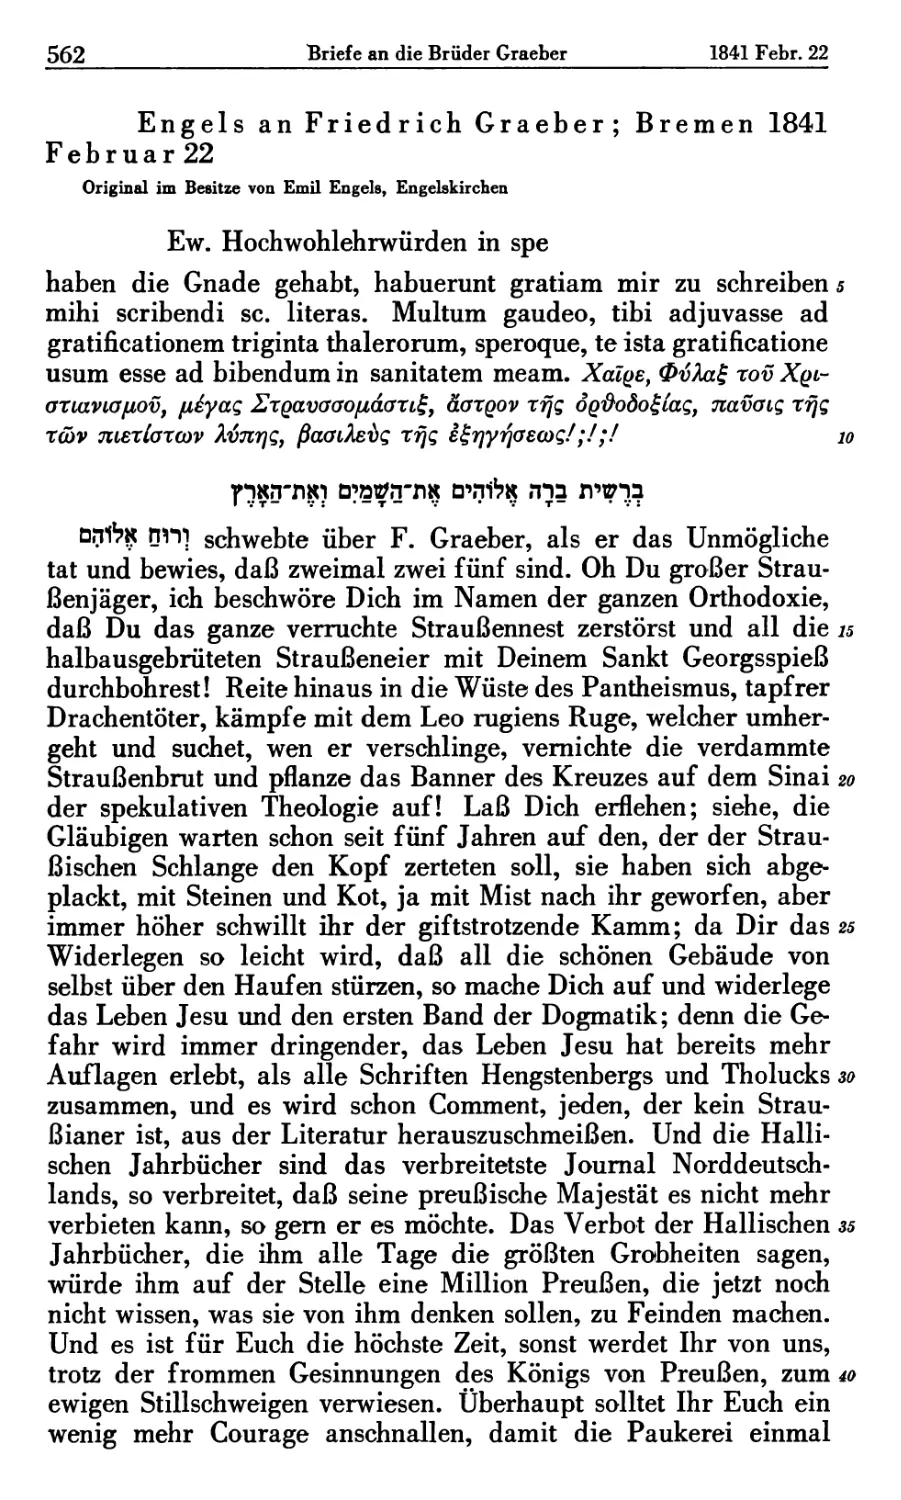 Engels an Friedrich Graeber; Bremen 1841 Februar 22